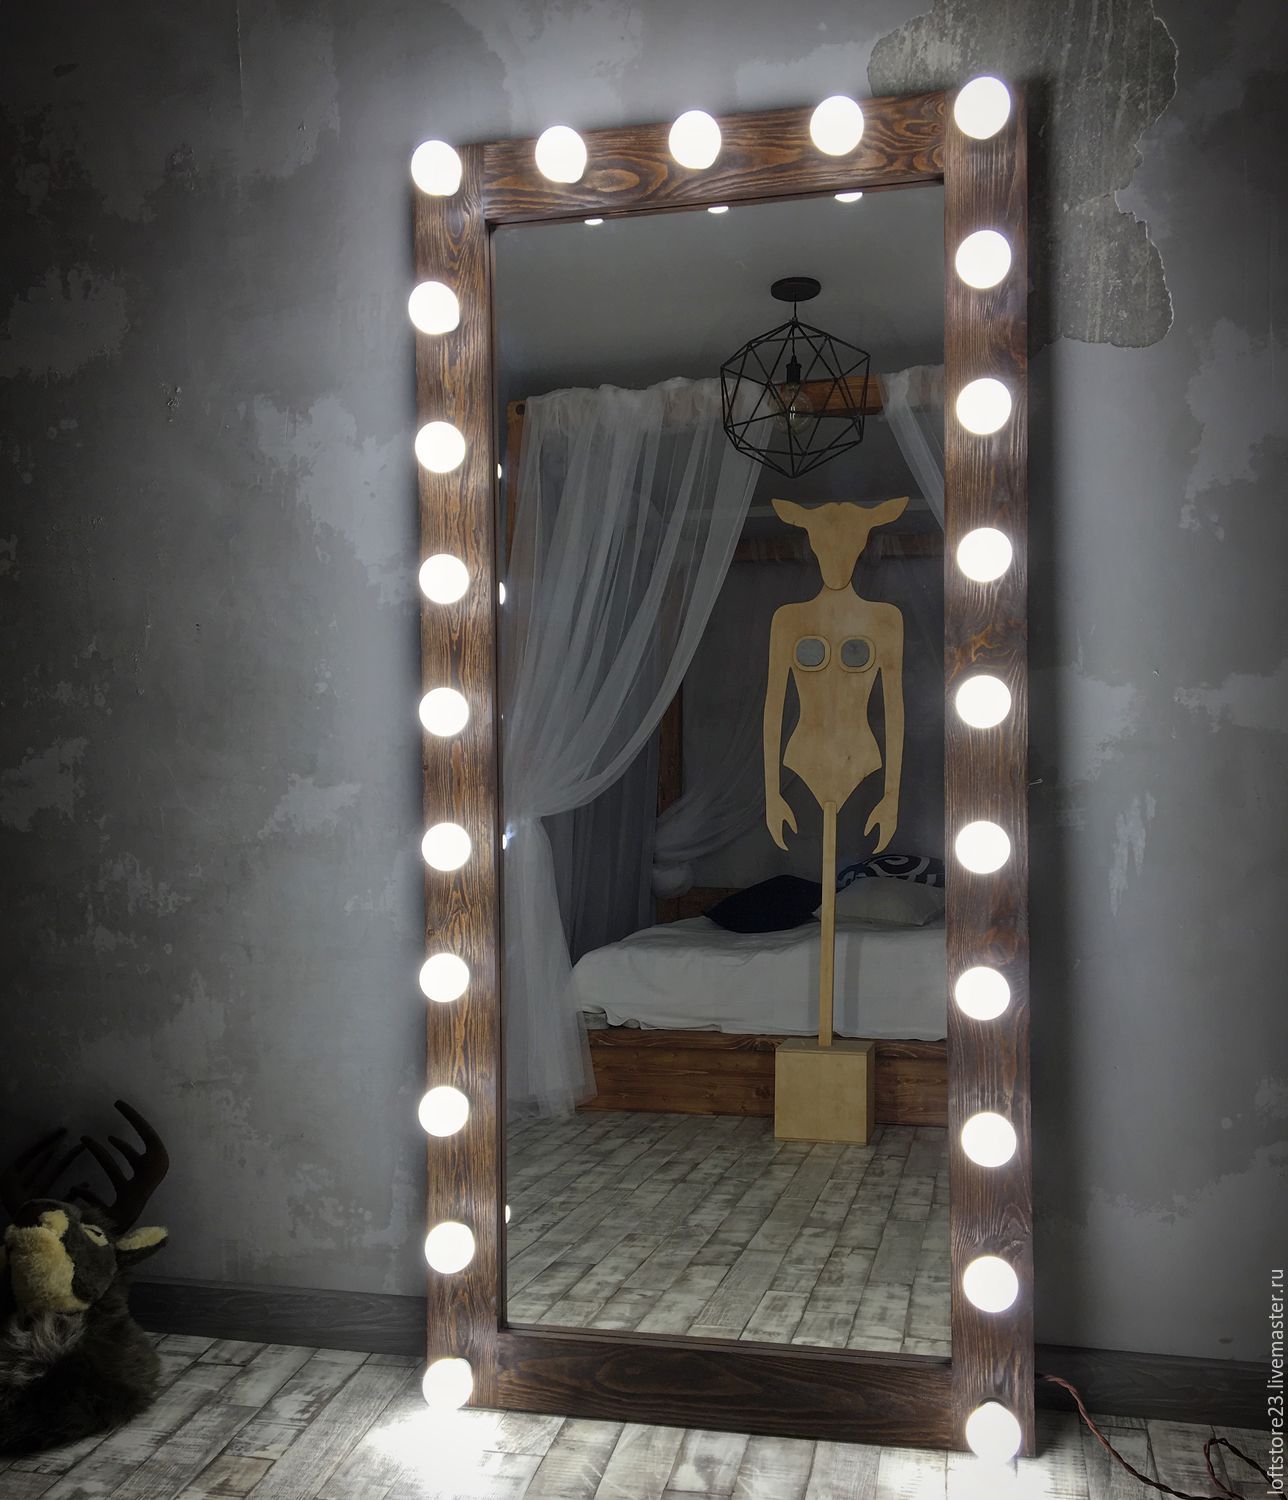 إضاءة للمرآة مزودة بمحول وجبل للمدخل وغرفة نوم ومصباح Led ومصابيح هالوجين للوحات فوق أو حول